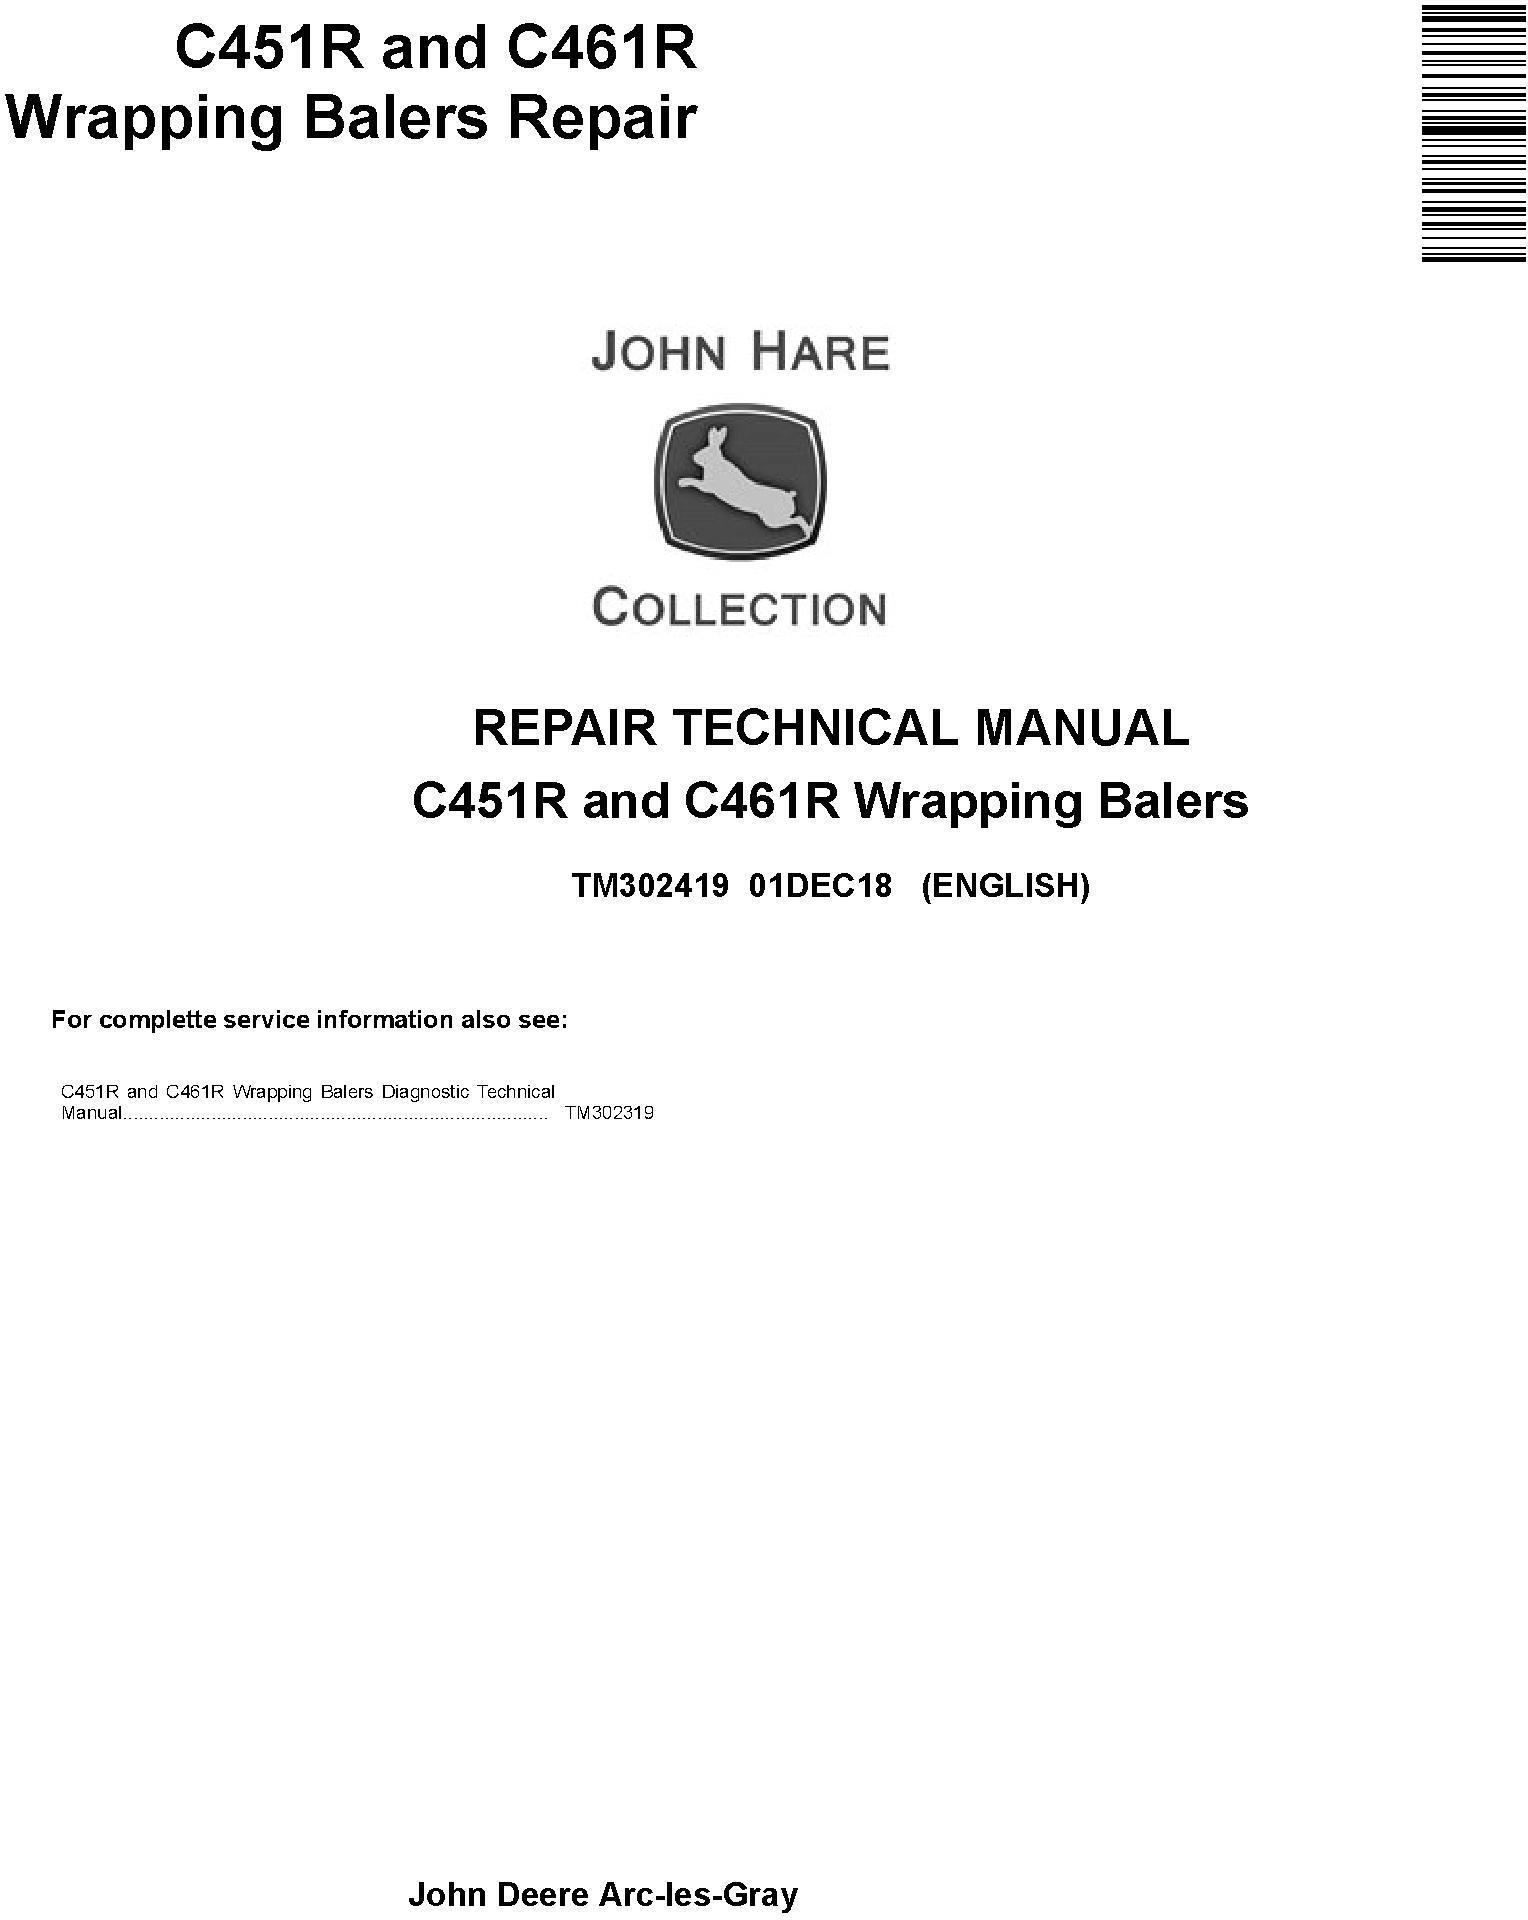 John Deere C451R C461R Wrapping Balers Repair Technical Manual TM302419